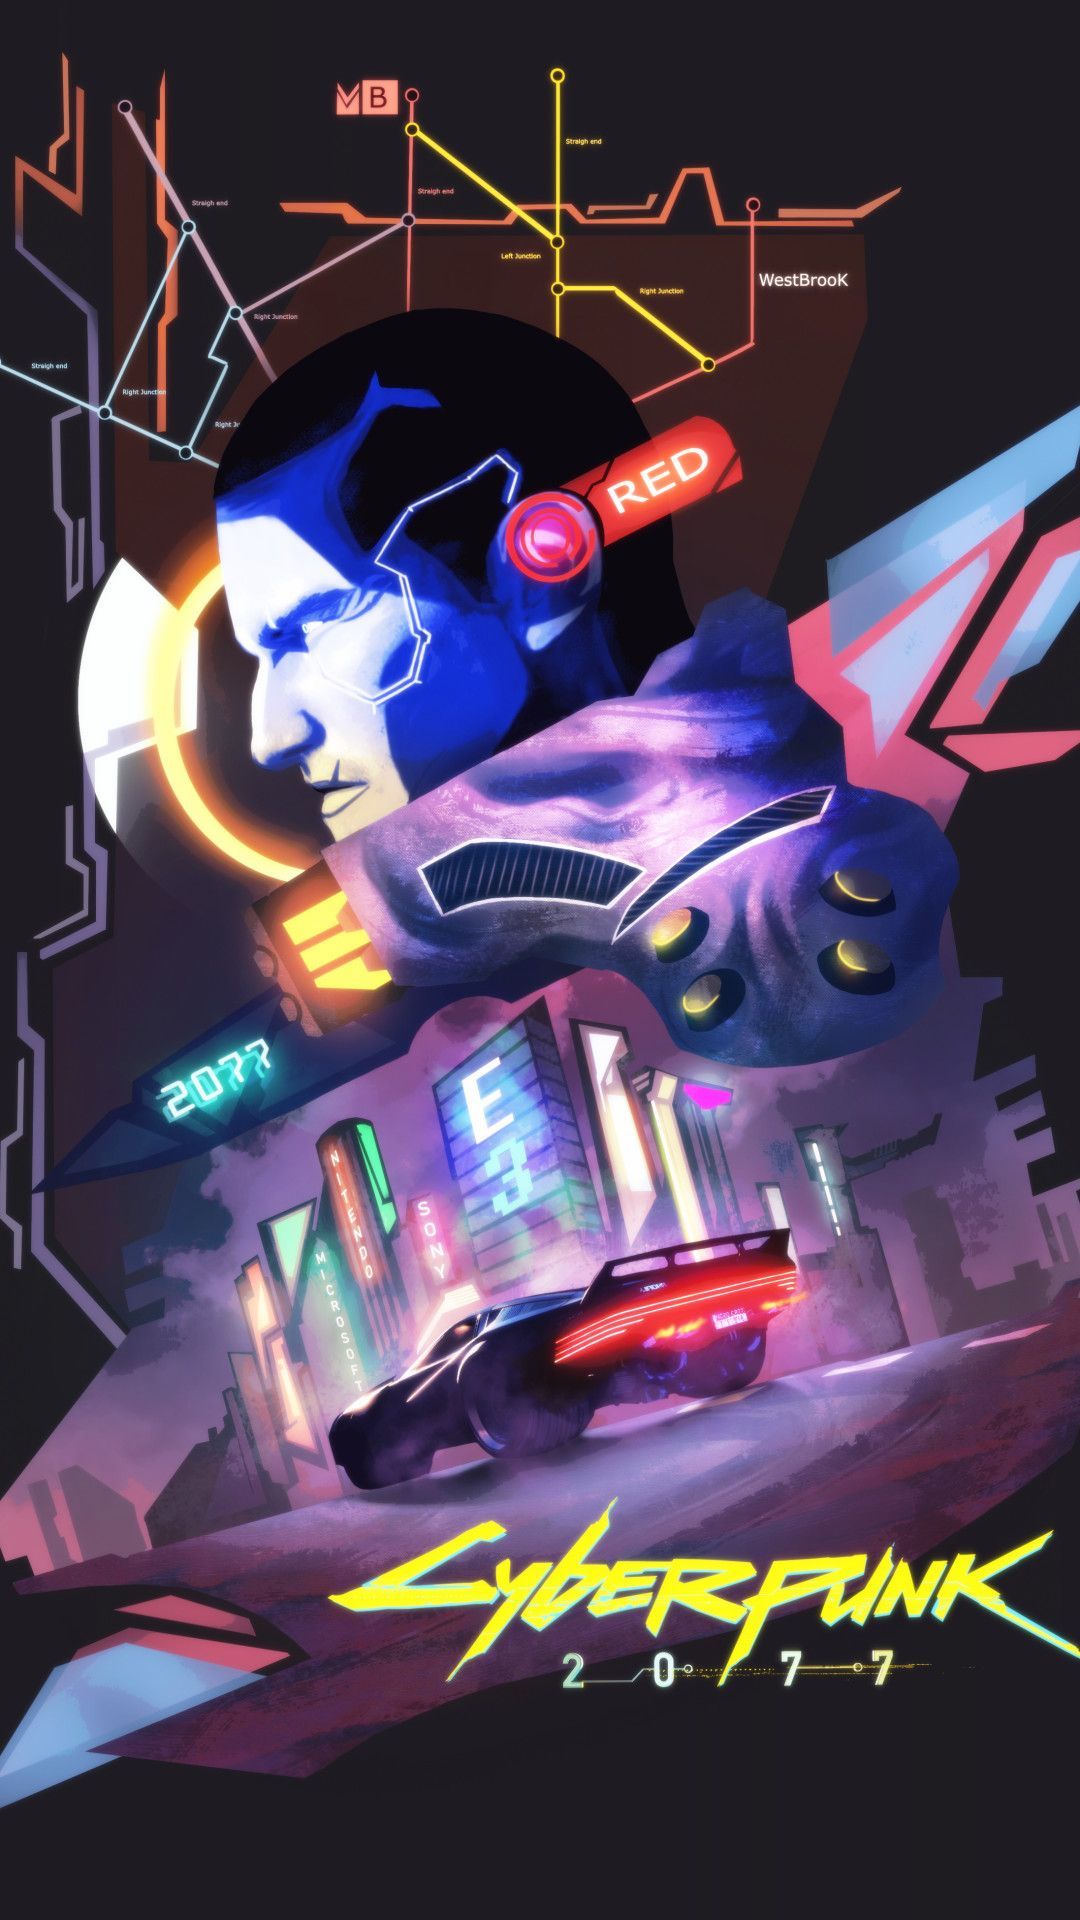 Cyberpunk 2077 Game Fanart Mobile Wallpaper (iPhone, Android, Samsung, Pixel, Xiaomi). Cyberpunk Cyberpunk, Cyberpunk art